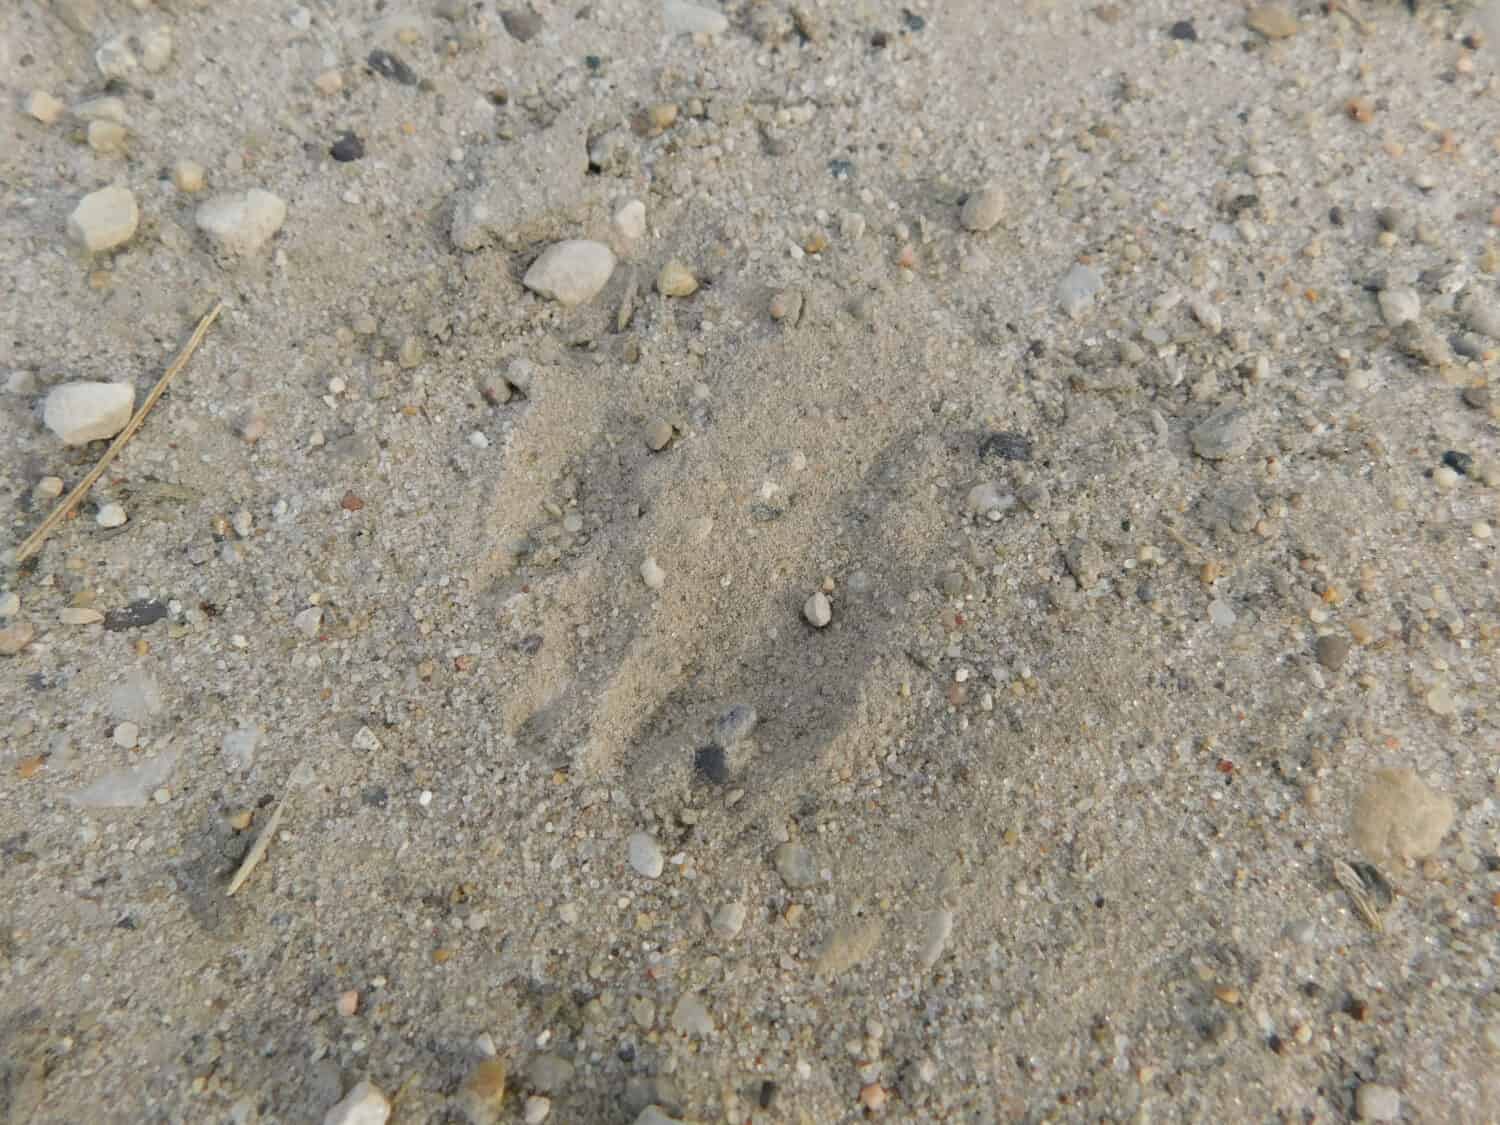 Tracks from a member of the weasel family (Nebraska 2019)